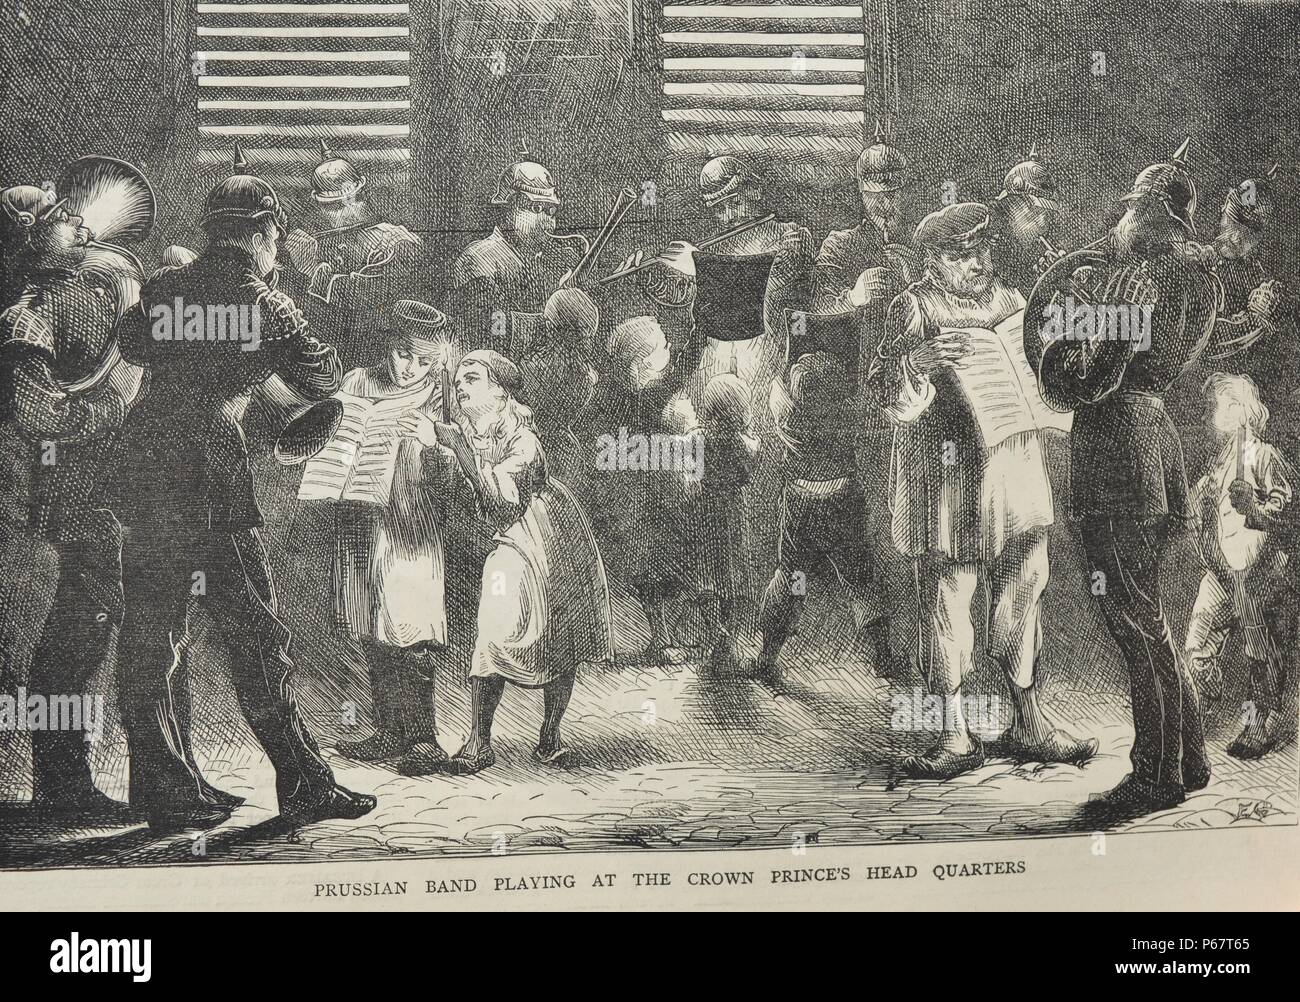 La gravure représente un groupe jouant de la Prusse à l'extérieur de la Couronne du Prince HEAD QUARTERS. Datée 1870 Banque D'Images